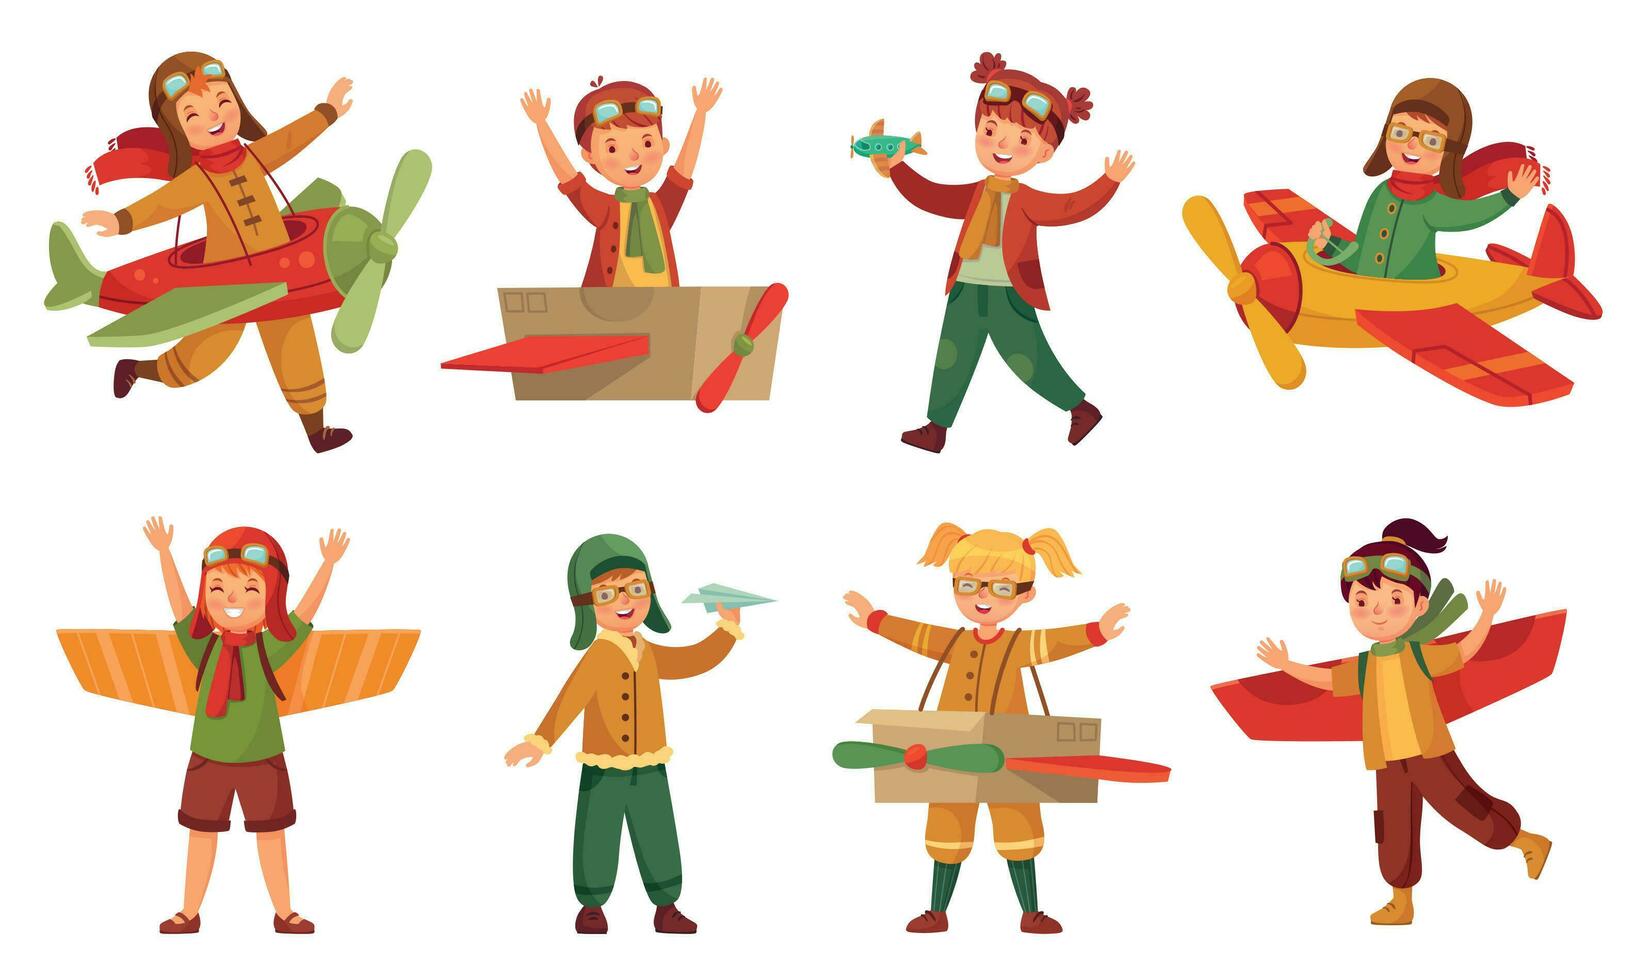 bambini nel pilota costumi. carta giocattolo aereo Ali, adorabile bambini giocare con aeroplani giocattoli e bambino aereo modellismo vettore impostato